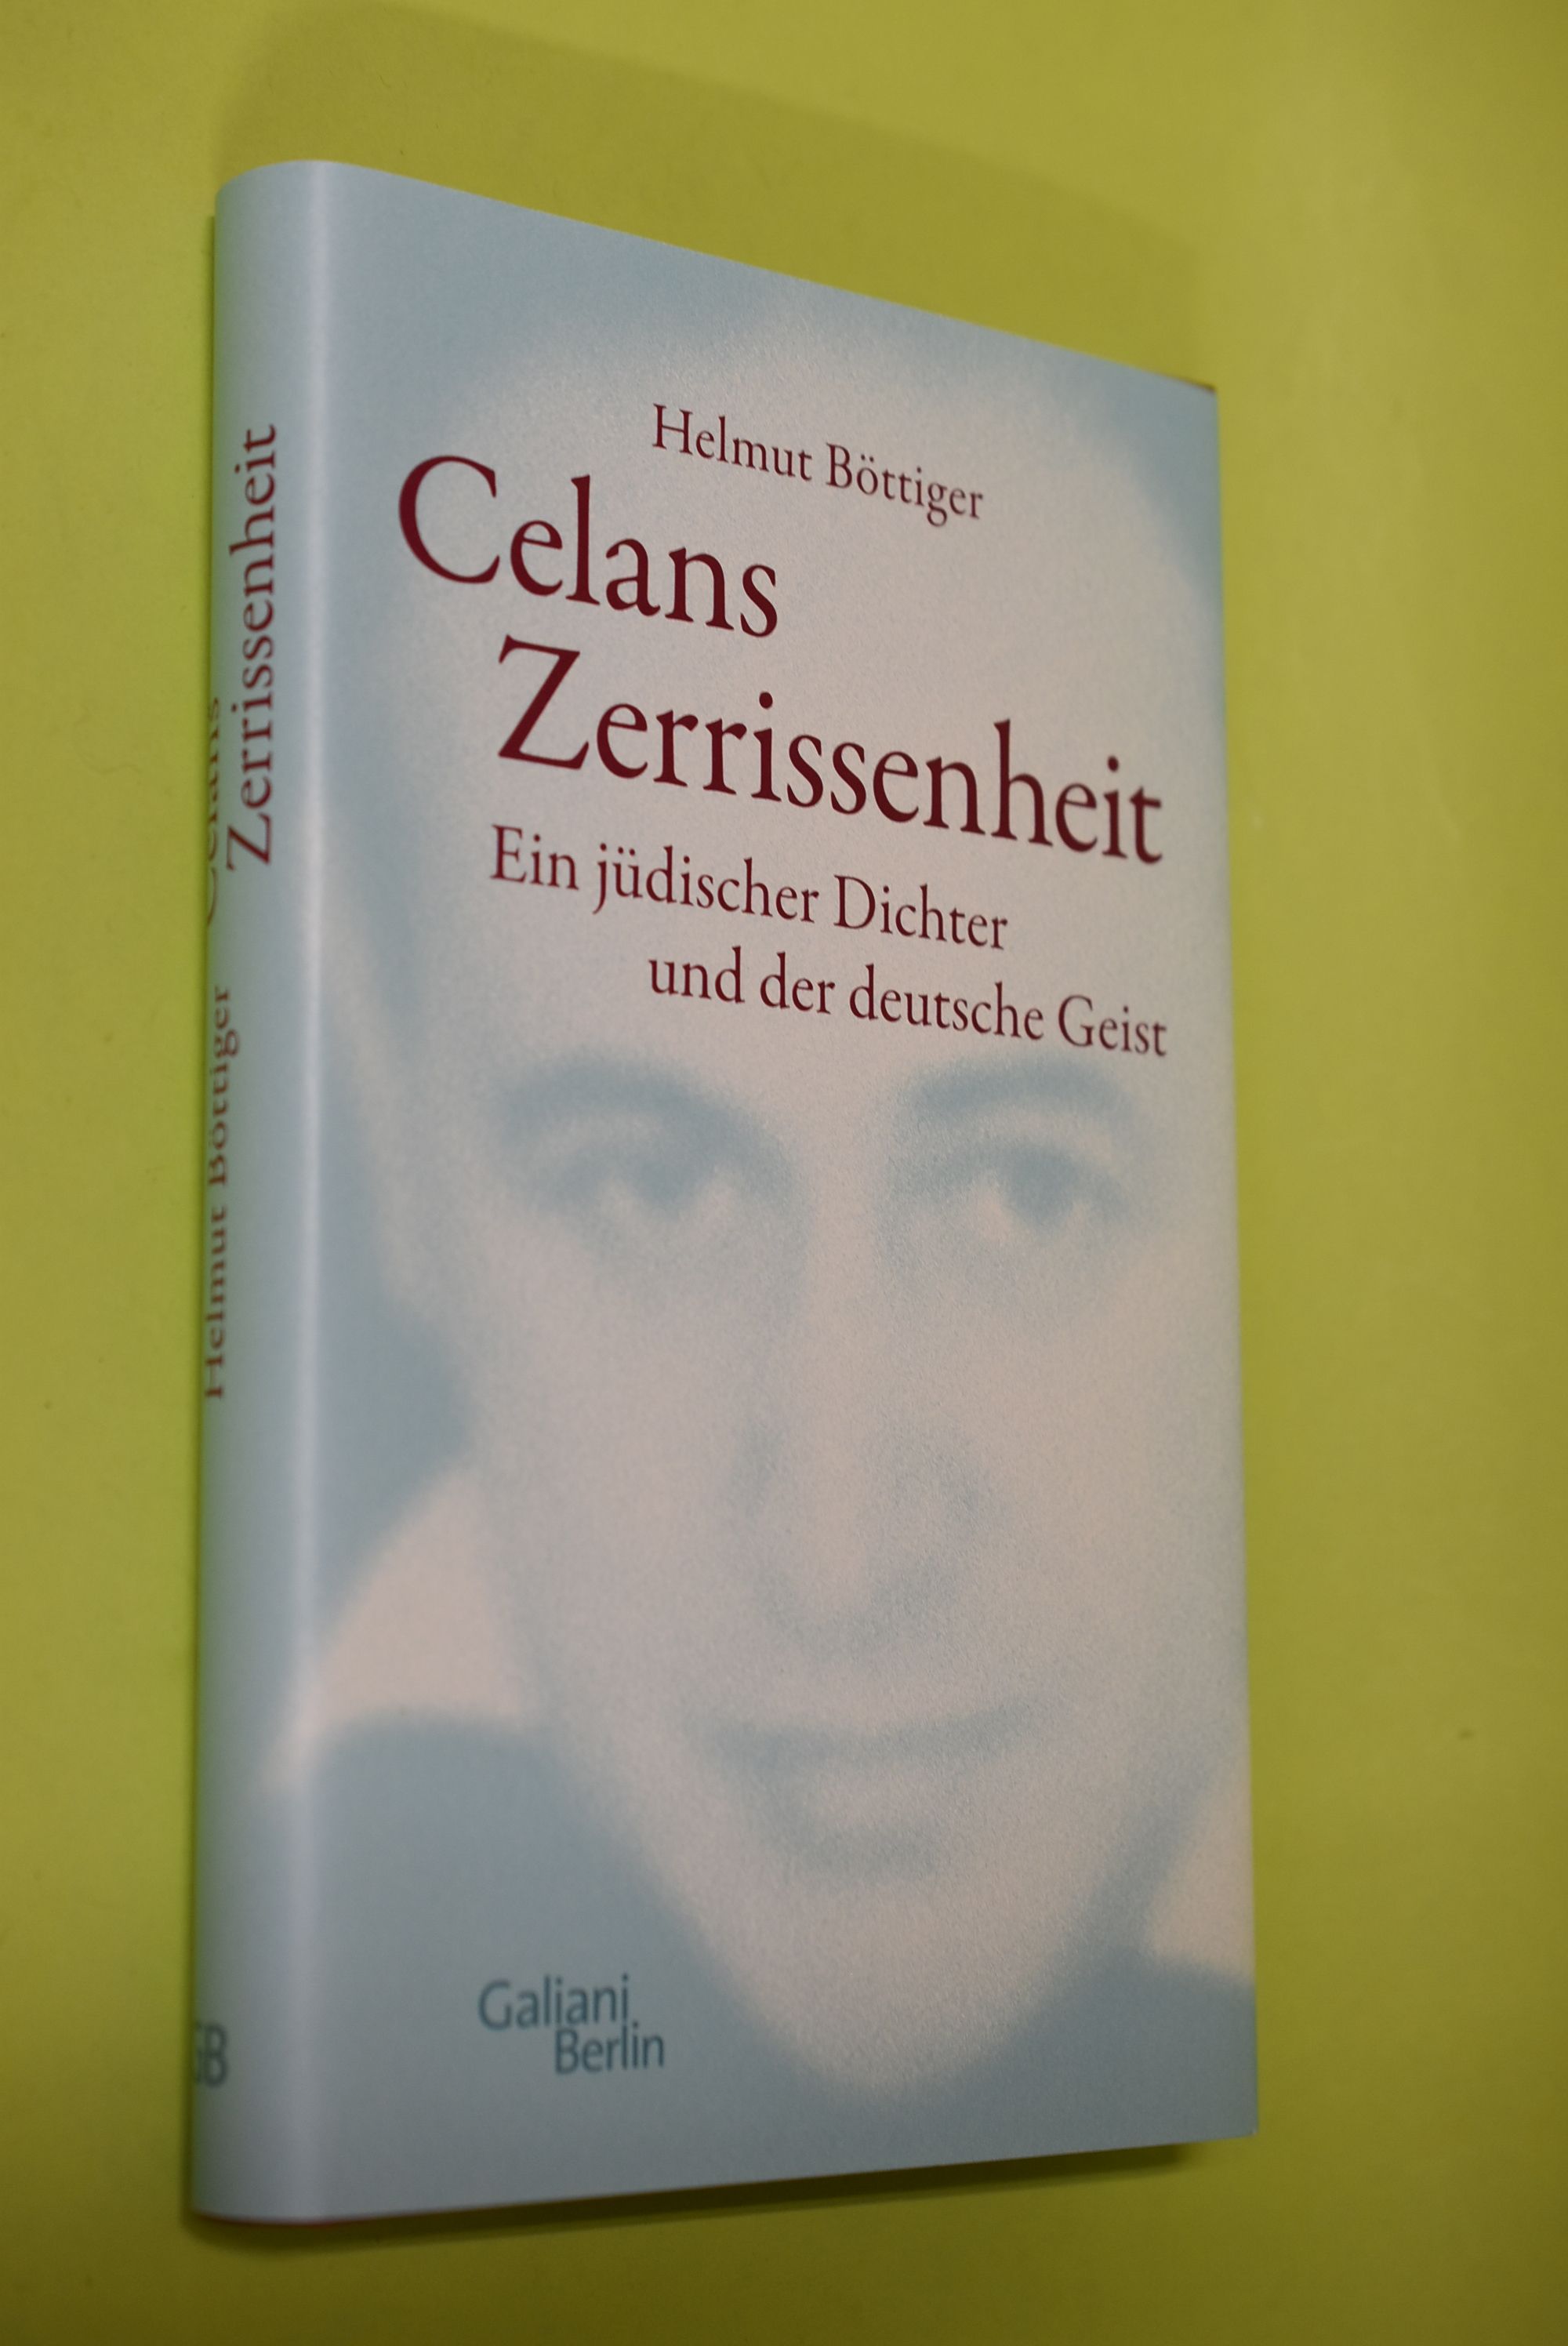 Celans Zerrissenheit : ein jüdischer Dichter und der deutsche Geist. - Böttiger, Helmut